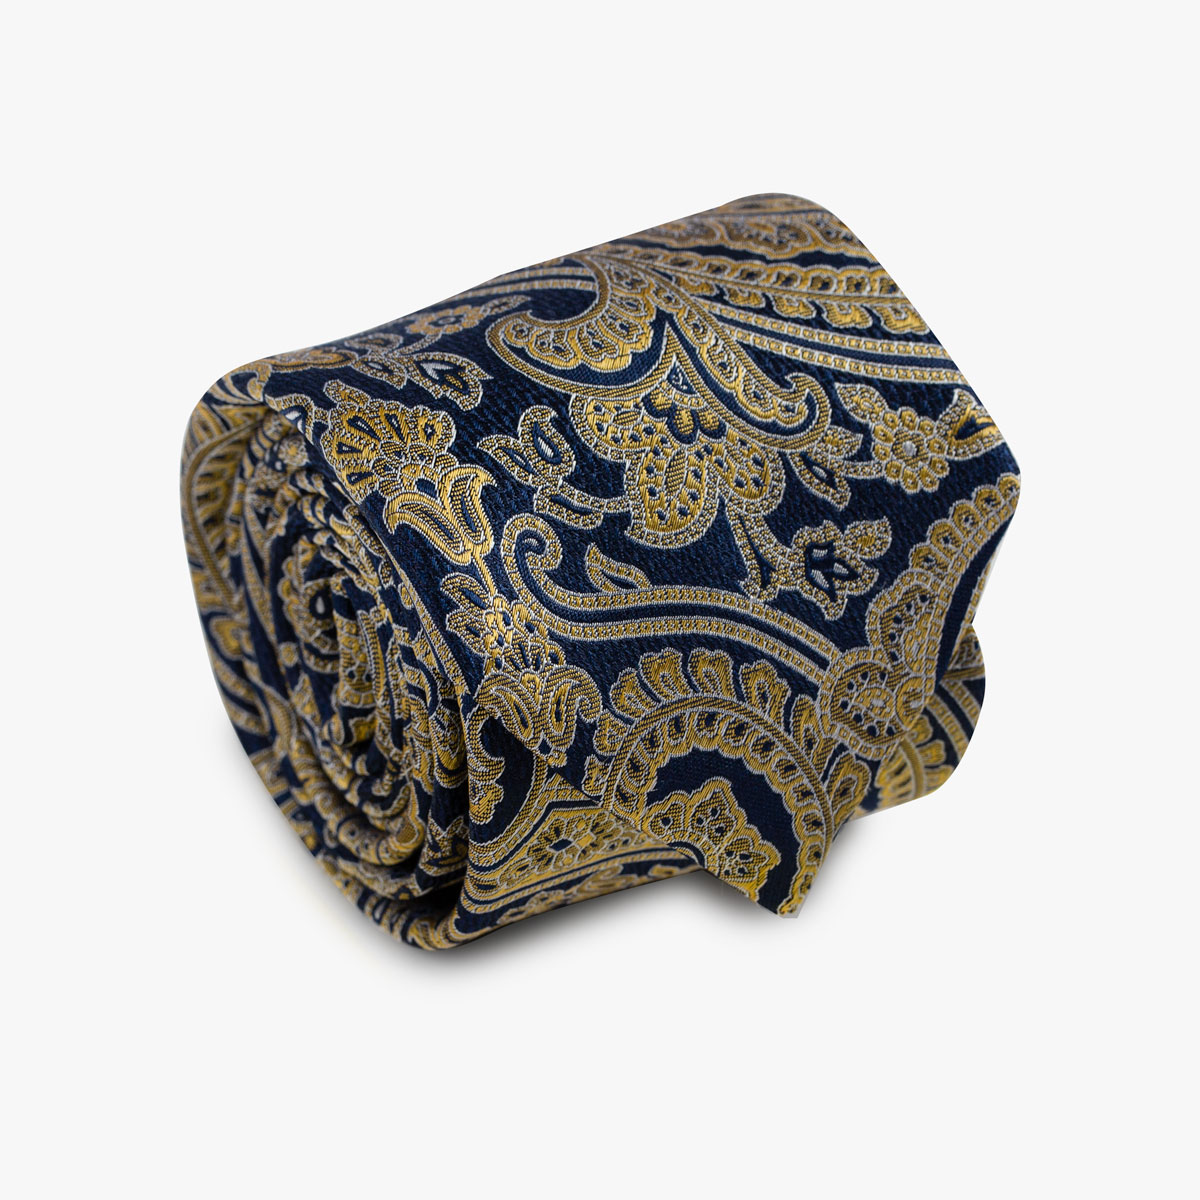 Aufgerollte Krawatte mit Paisley-Muster in dunkelblau und gold